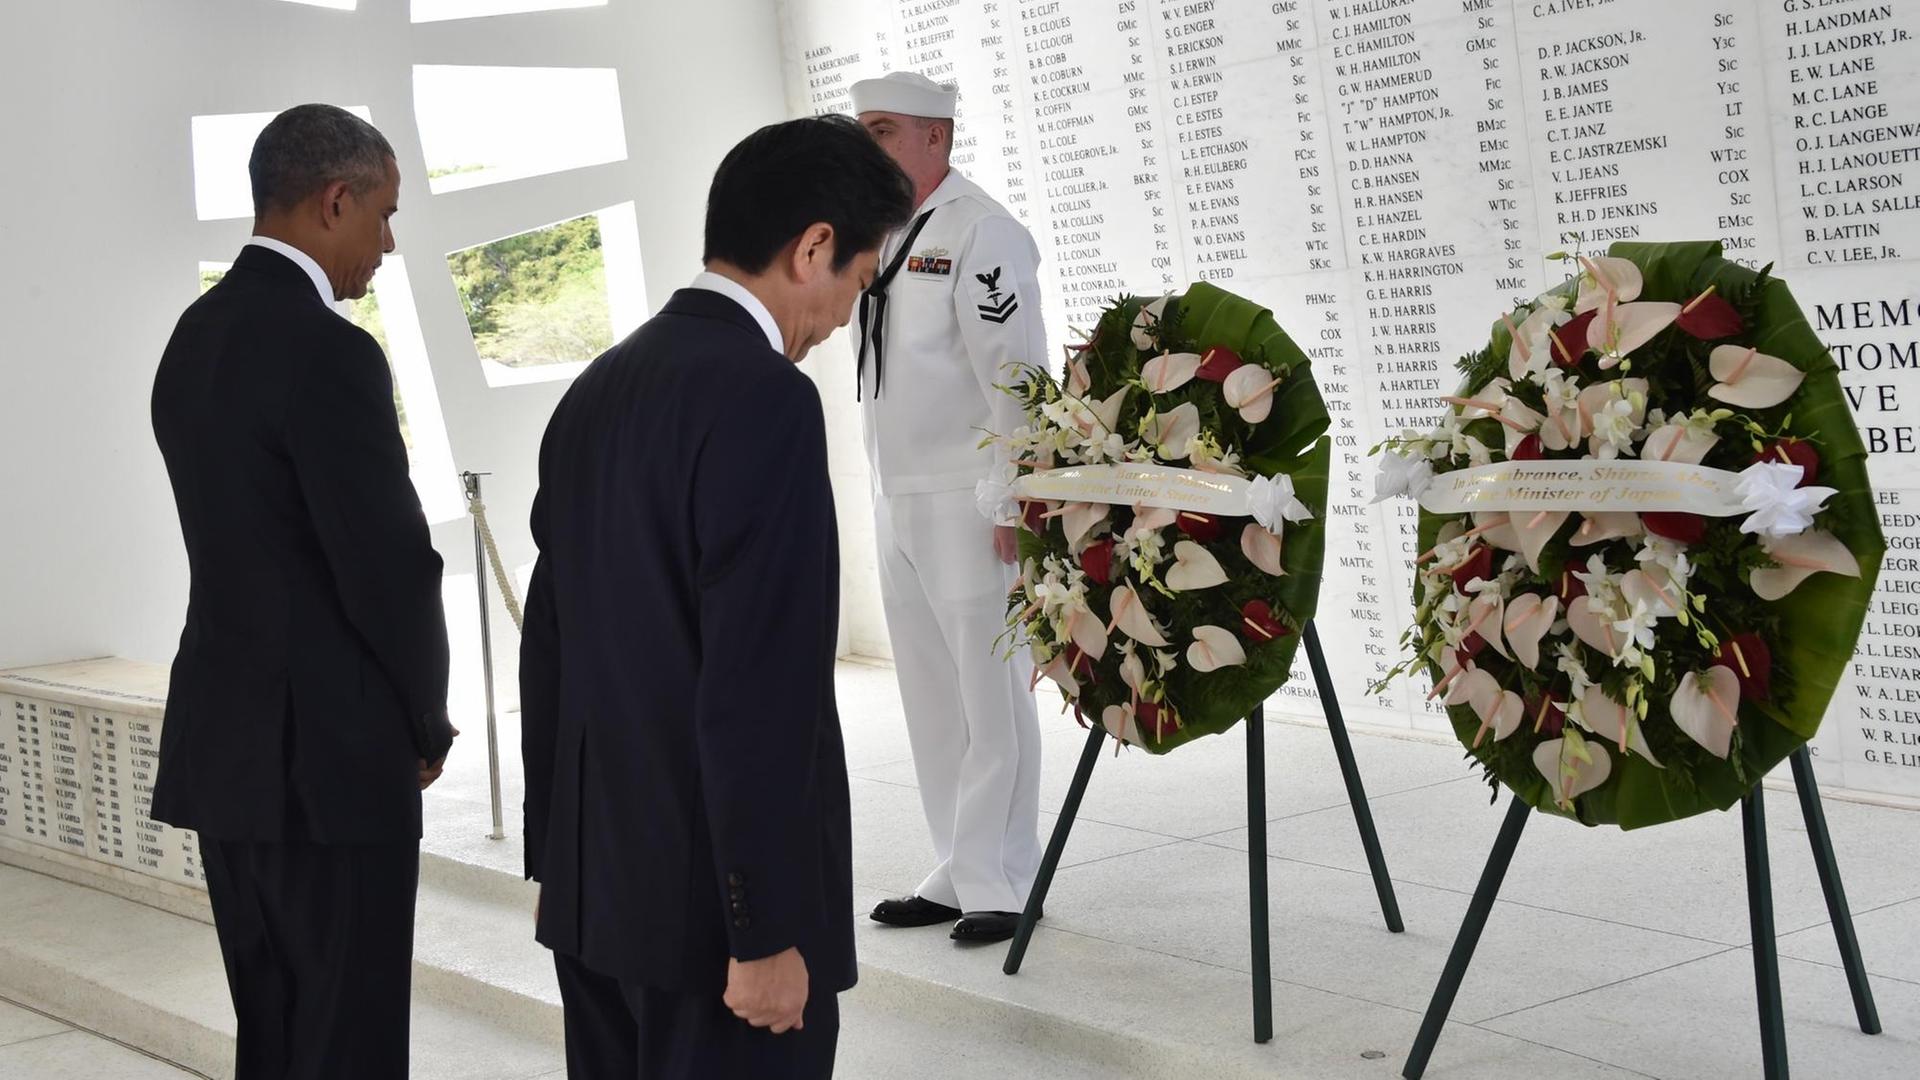 US-Präsident Obama und Japans Ministerpräsident Abe haben in der offizoiellen Gedenkstätte in Pearl Harbor auf je einem Ständer Kränze abgelegt. Im Hintergrund sind auf einer weißen Marmorwand die Namen der Gefallenen eingraviert.